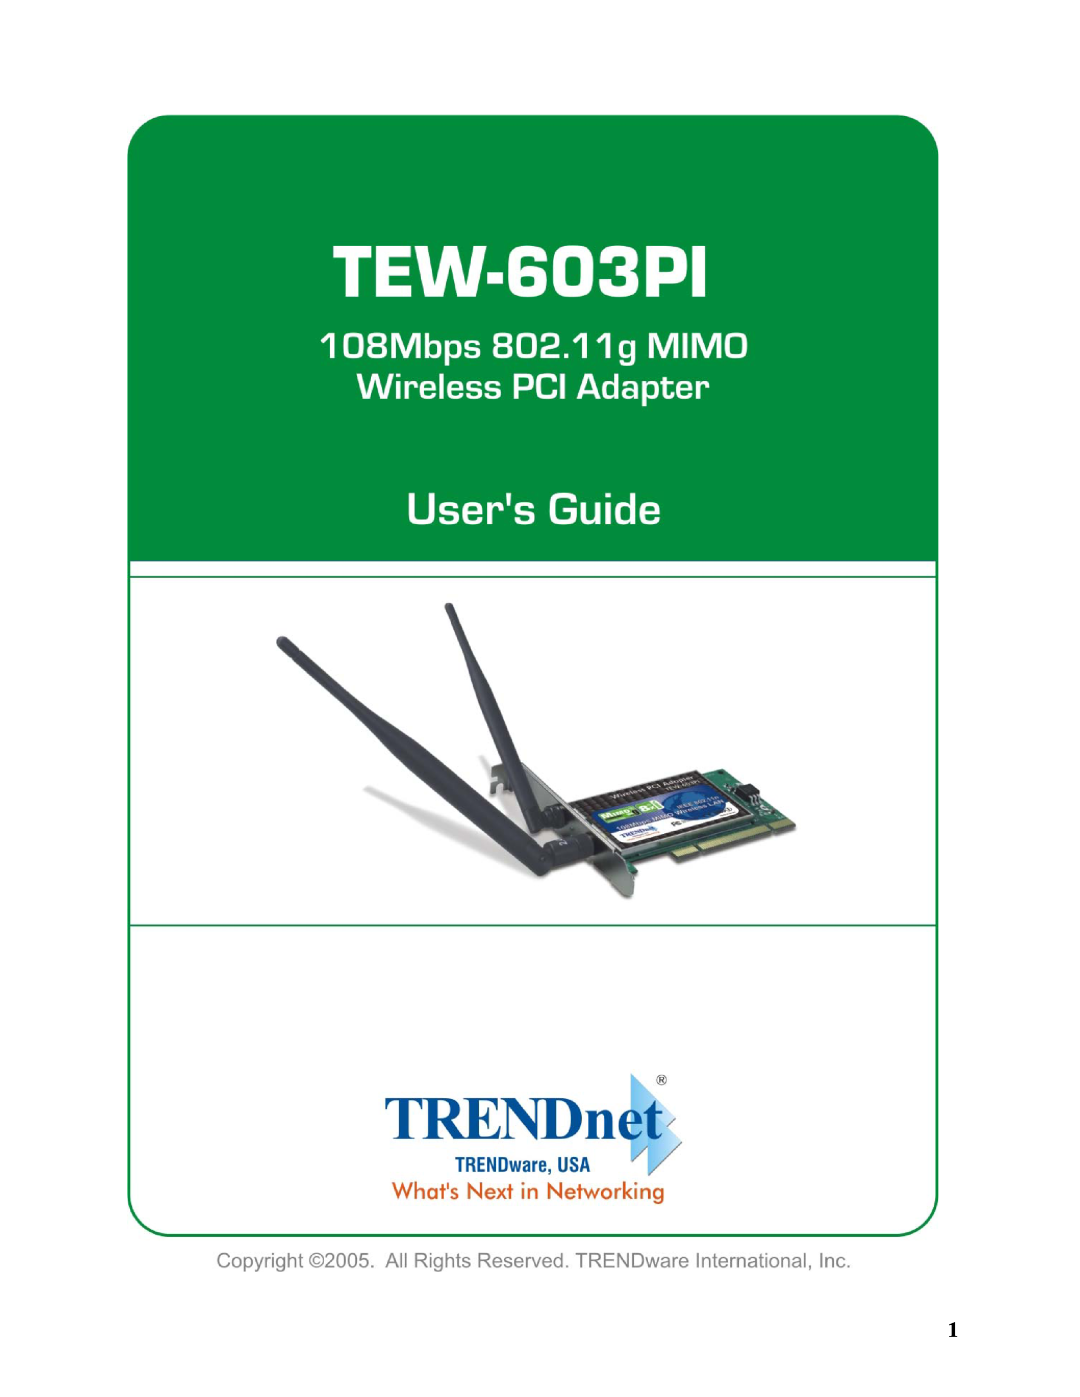 TRENDnet TEW-603PI manual 